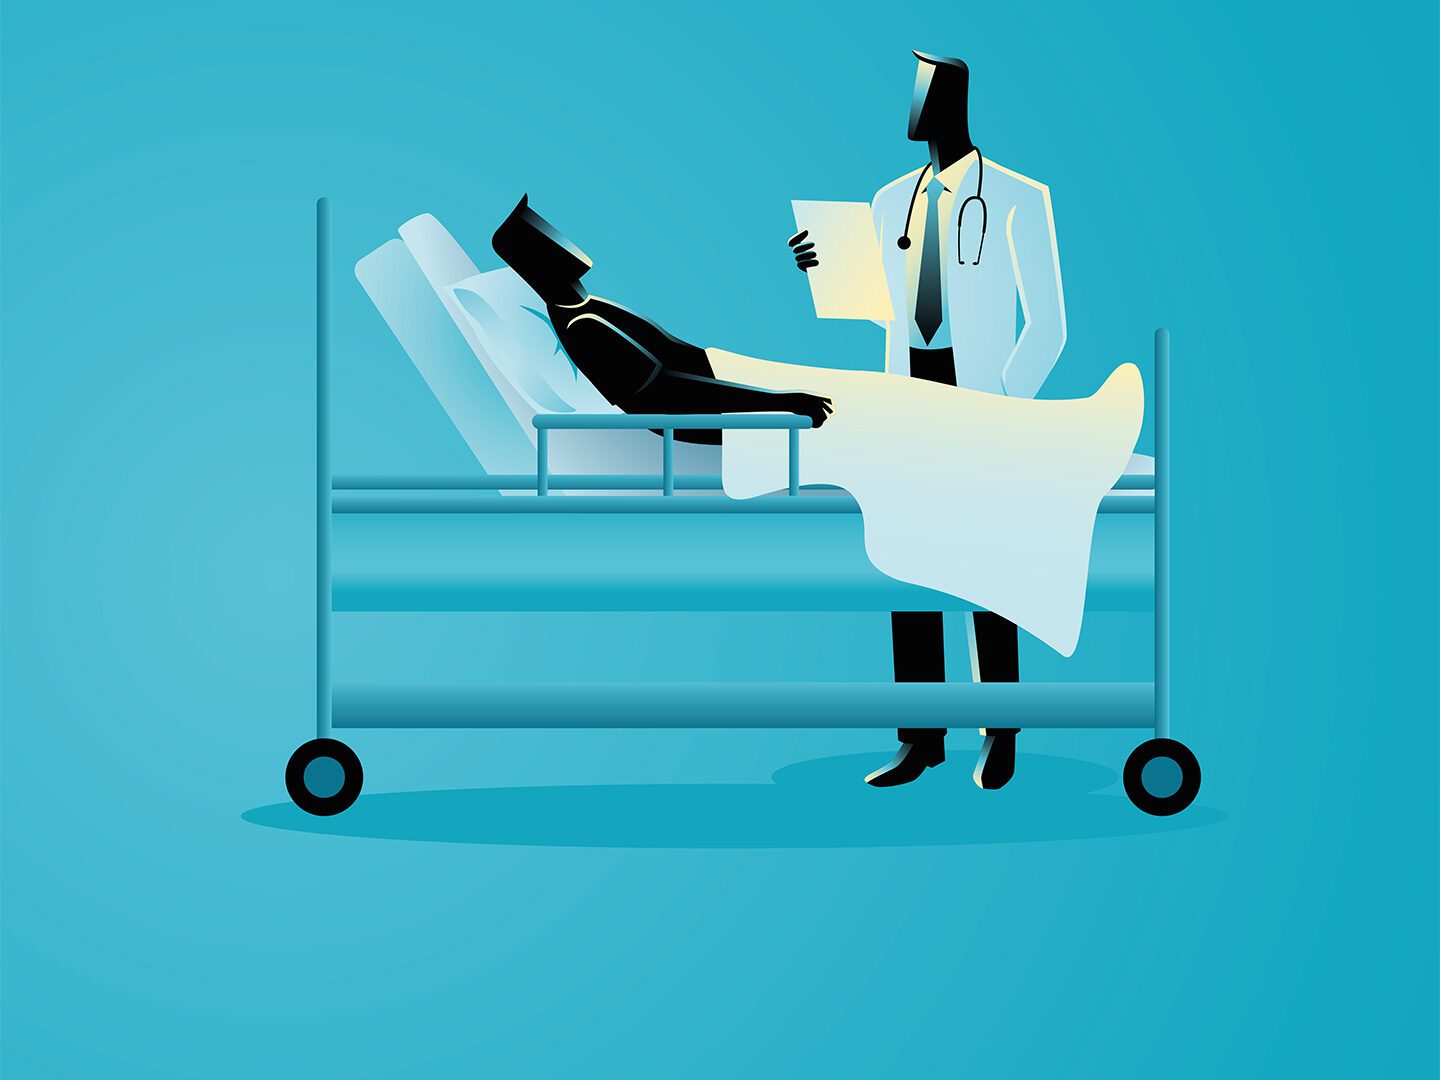 Eine Person im Ärztekittel mit einem Klemmbrett in der Hand steht an einem Bett, in dem ein Patient liegt.